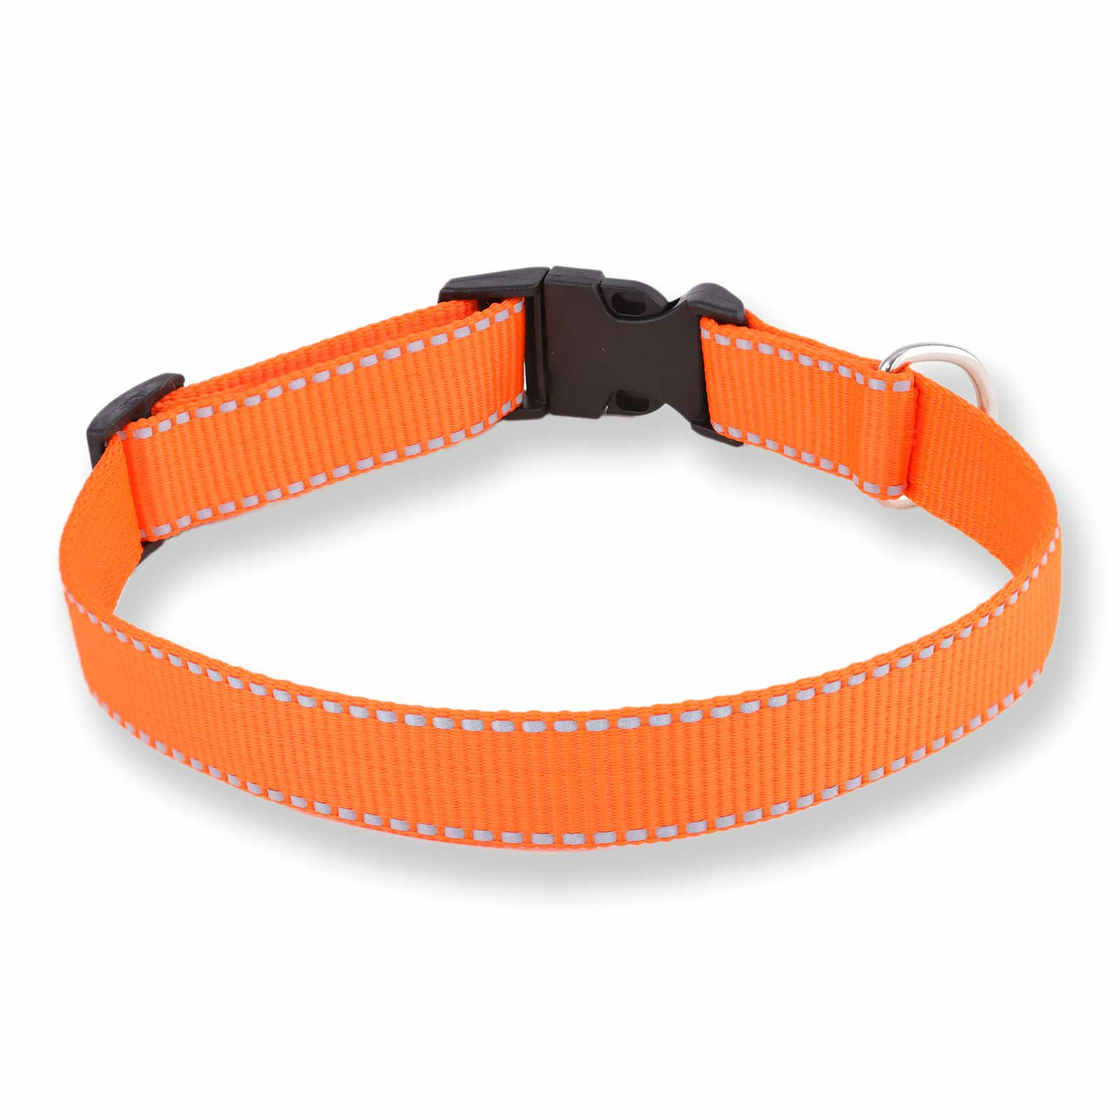 Hundehalsband aus Nylon orange reflektierend